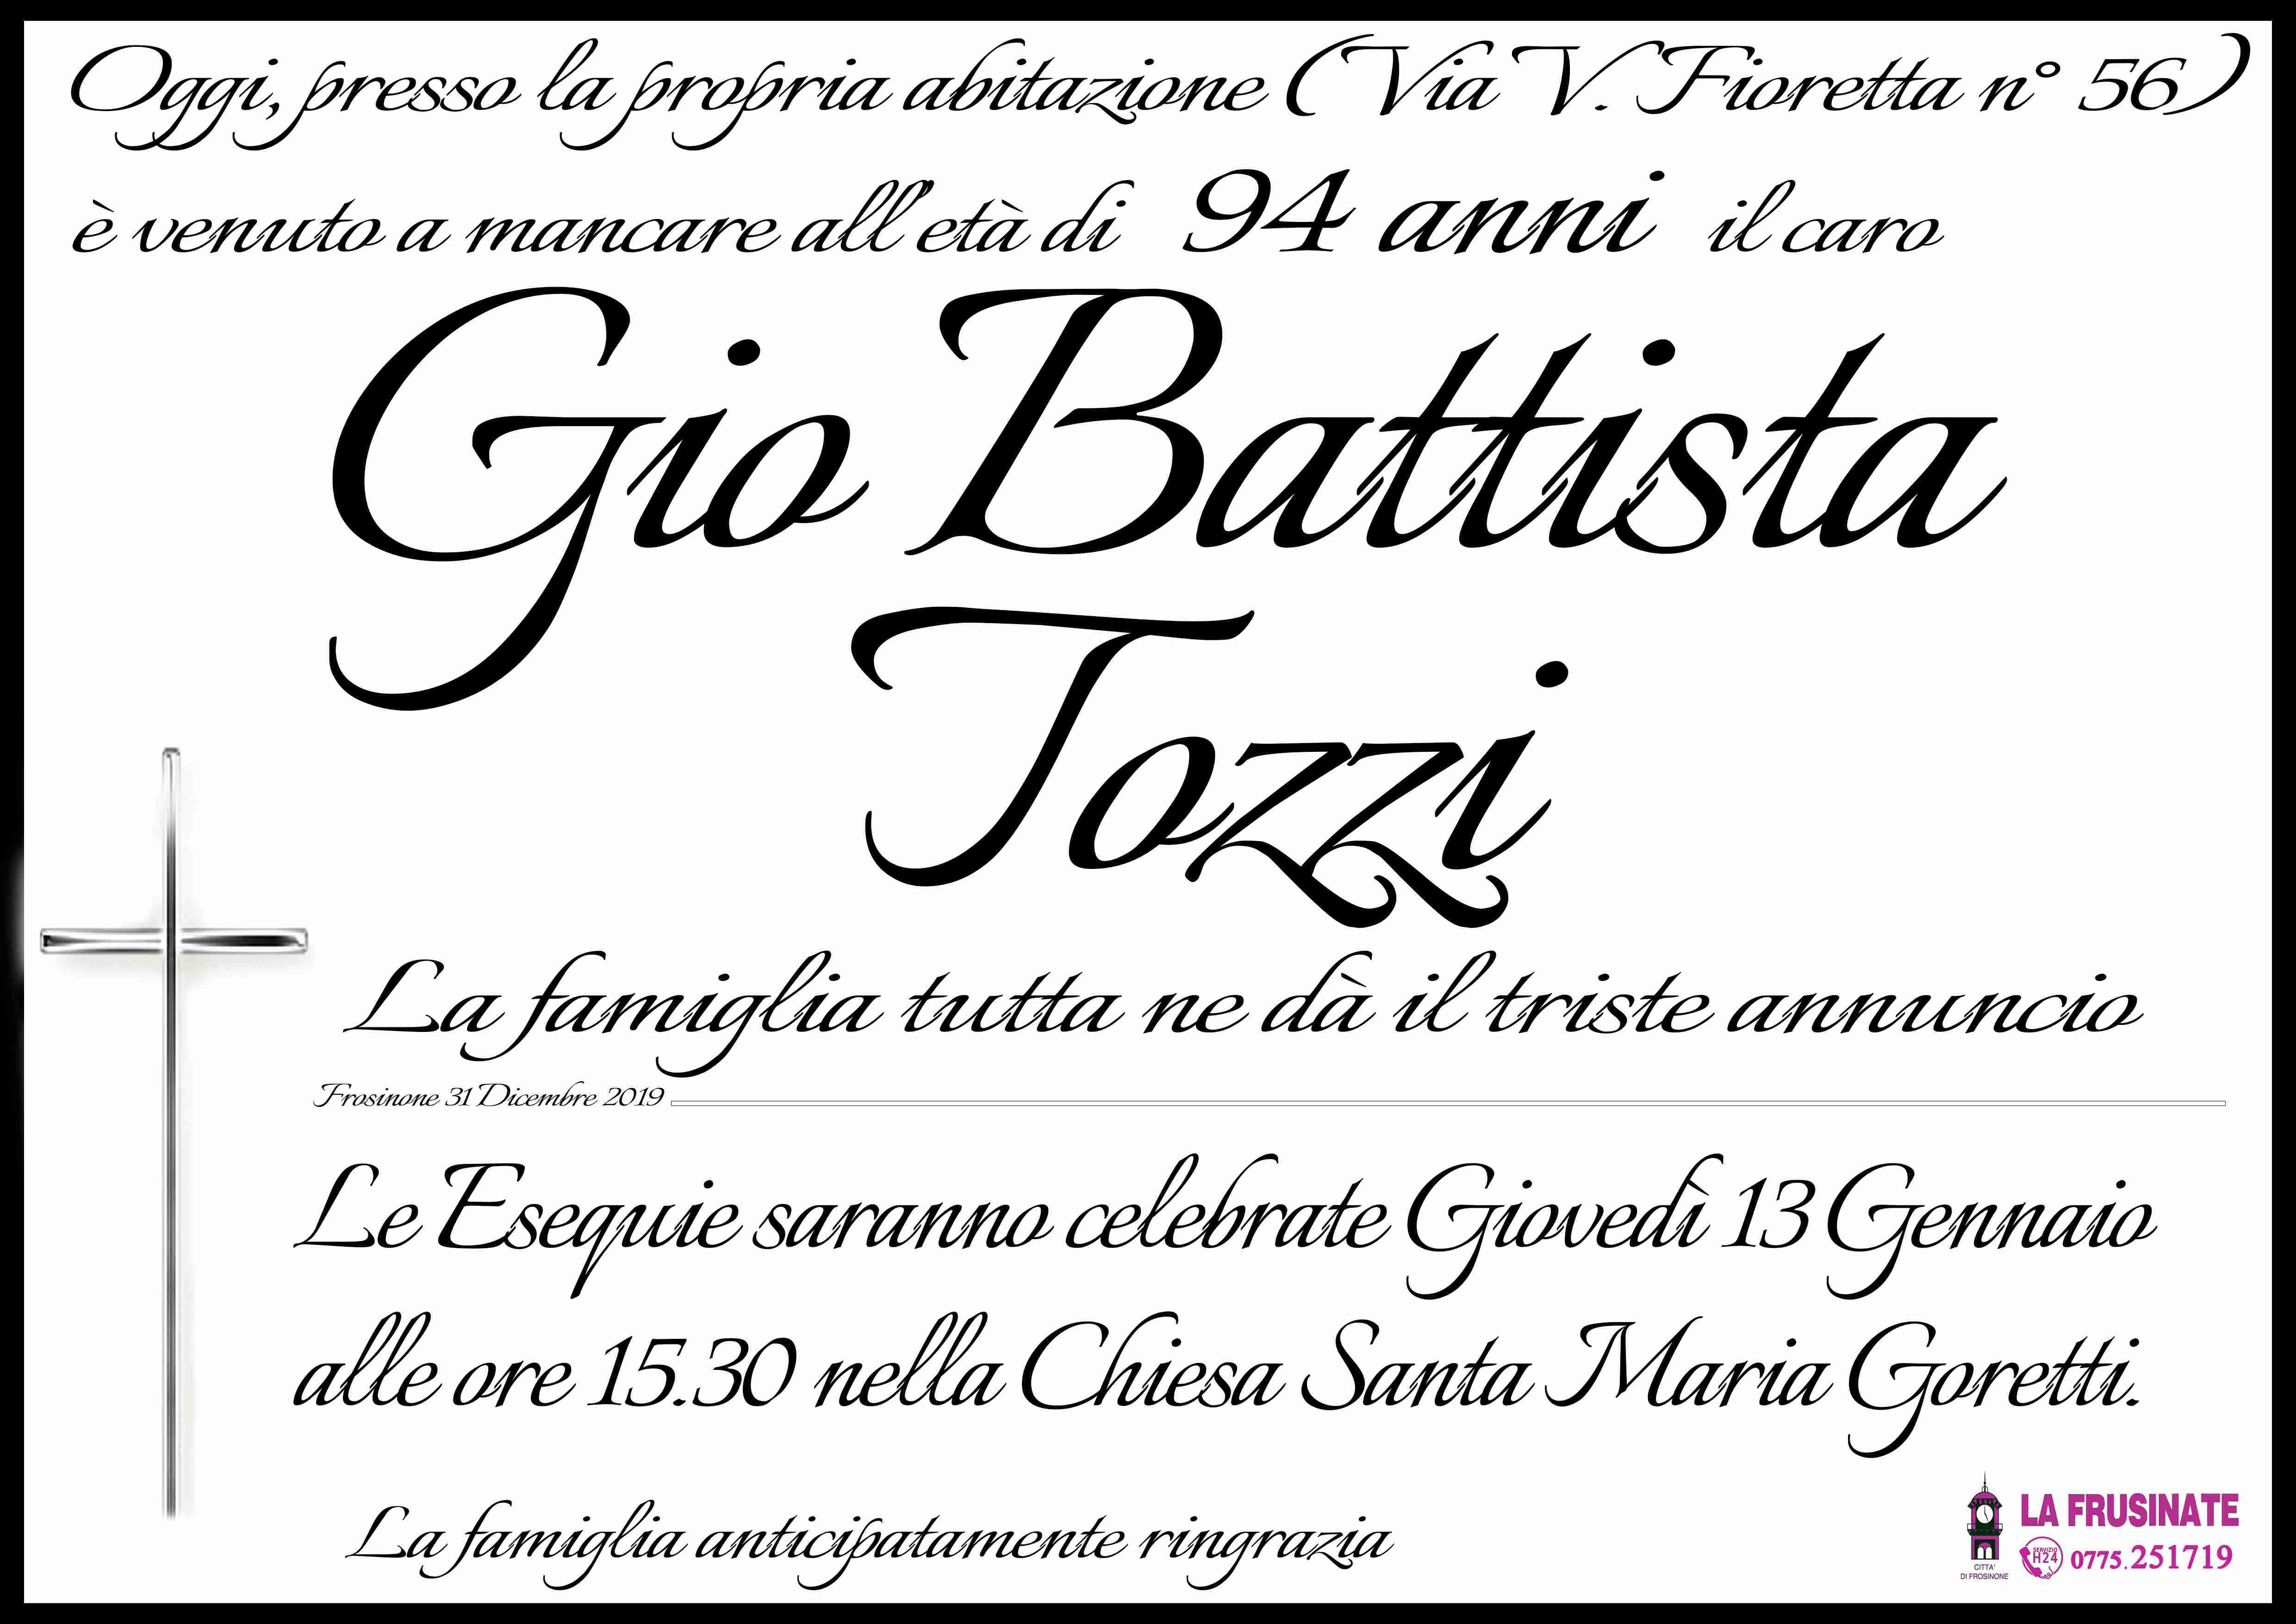 Gio Battista Tozzi